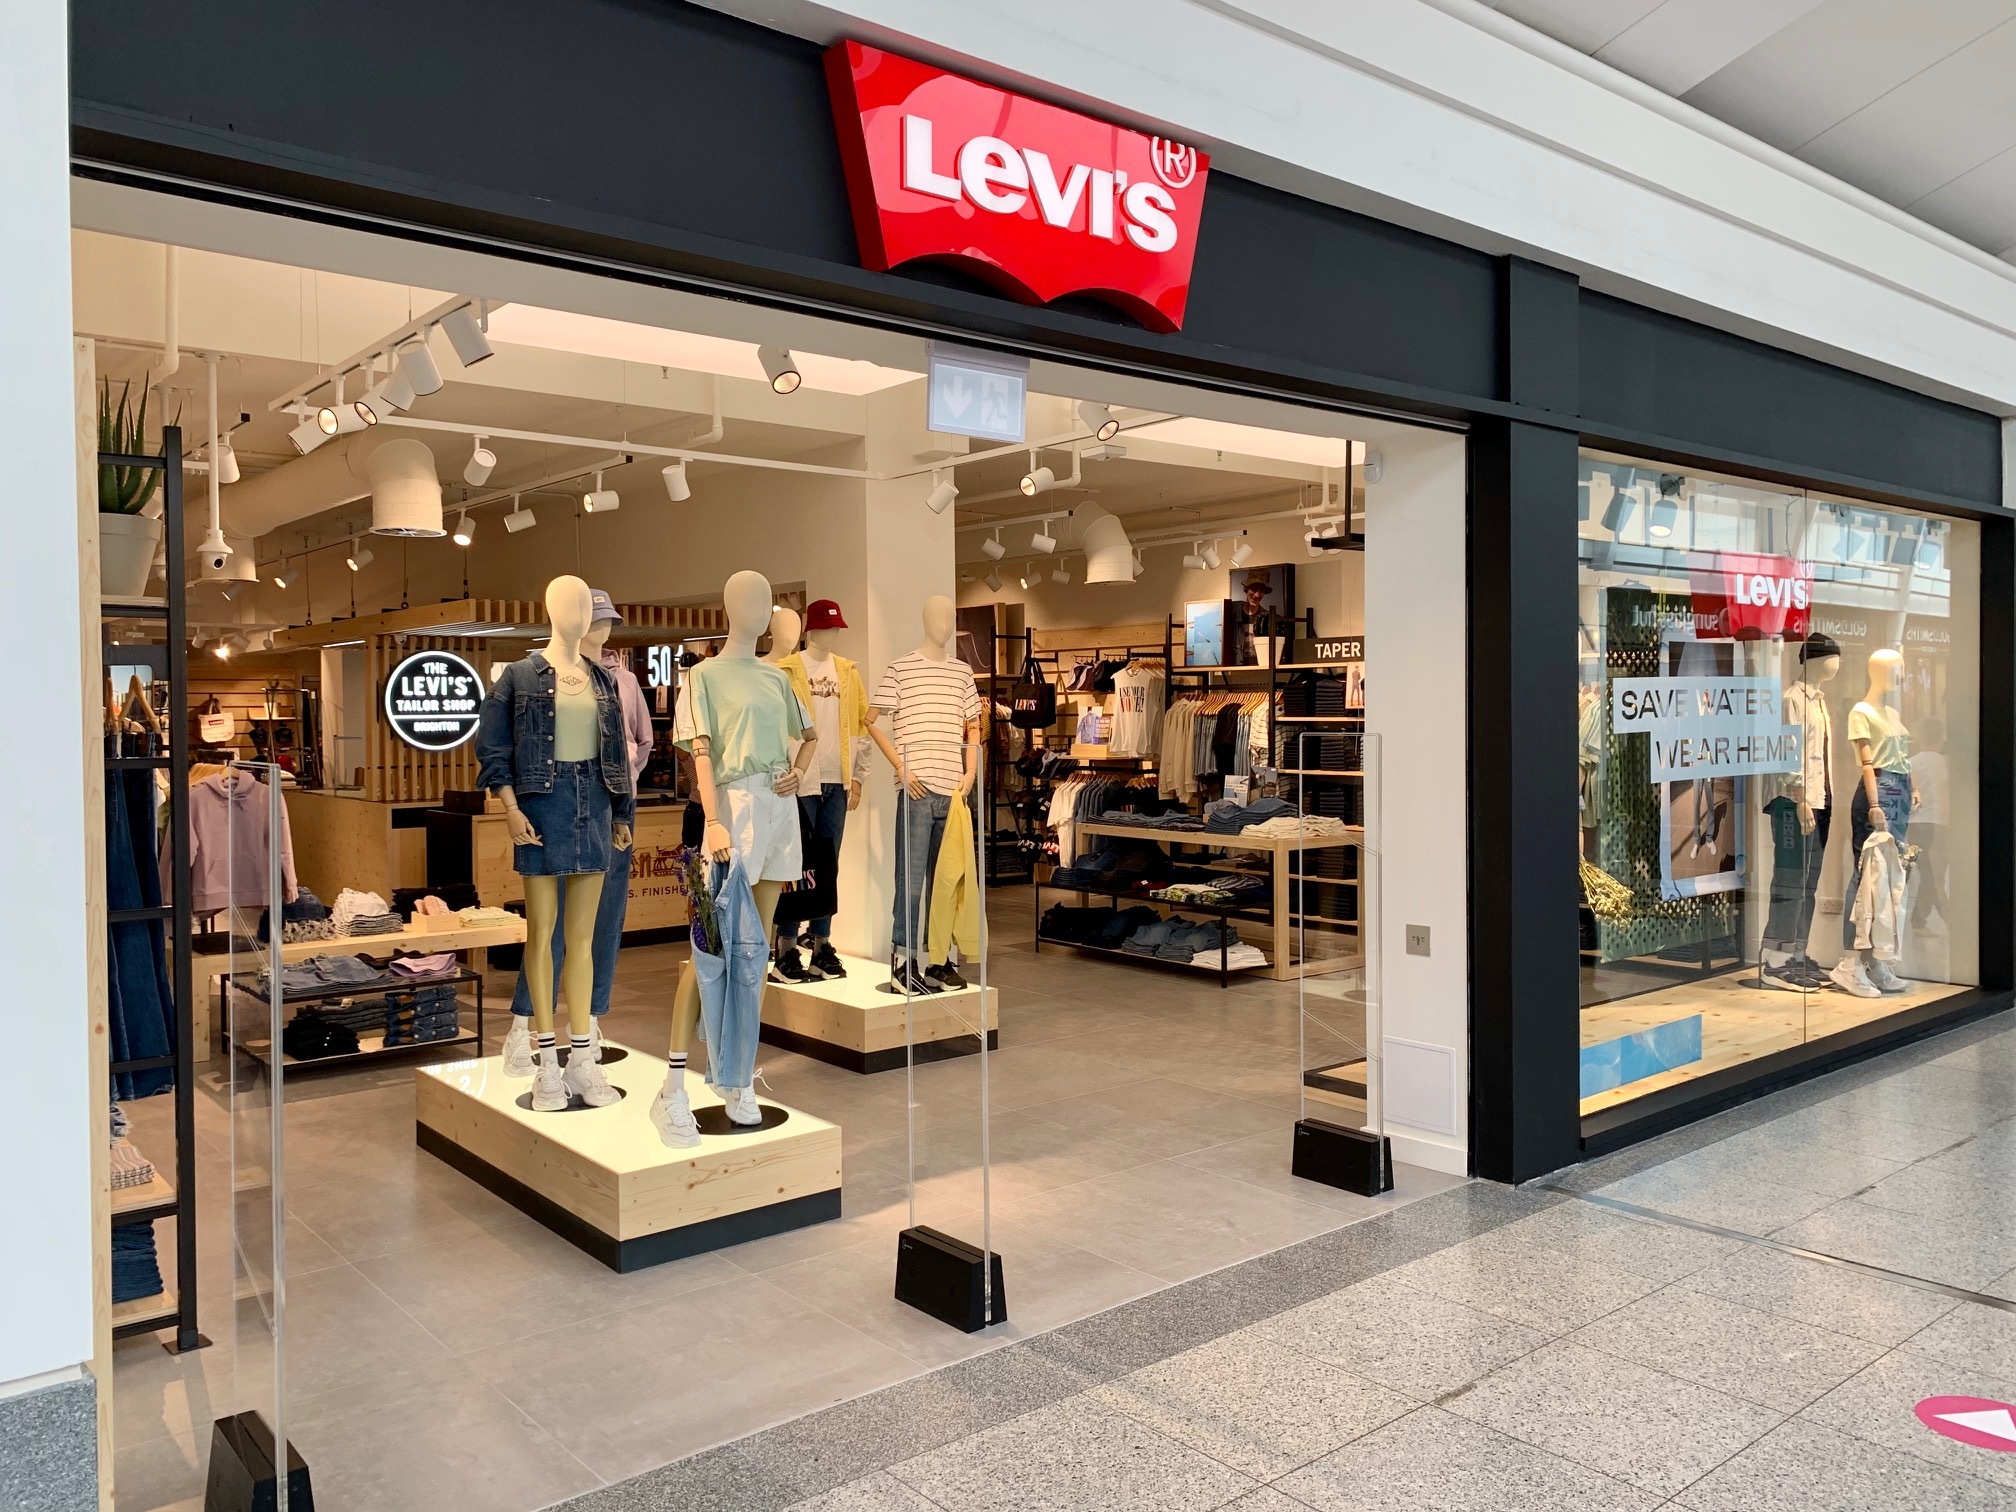 Uitdrukkelijk Optimisme inch Larger Levi's store opens at Churchill Square in Brighton | The Argus